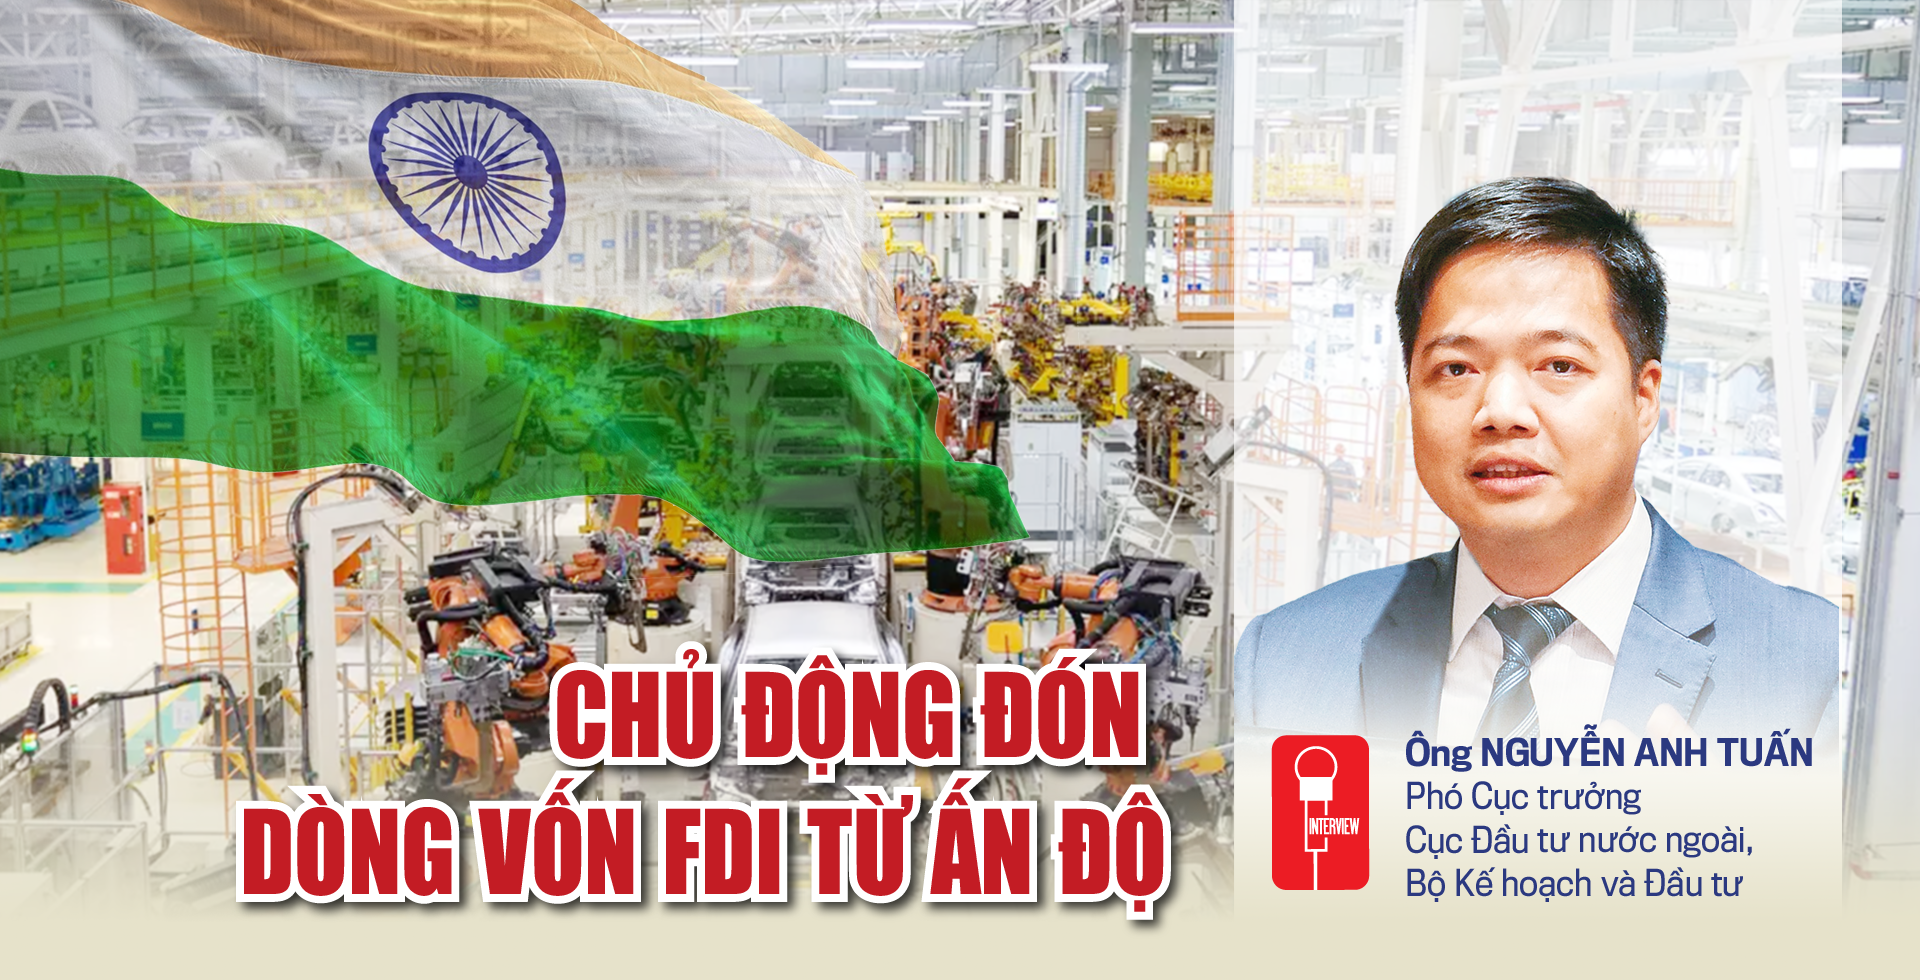 Chủ động đón dòng vốn FDI từ Ấn Độ - Ảnh 1